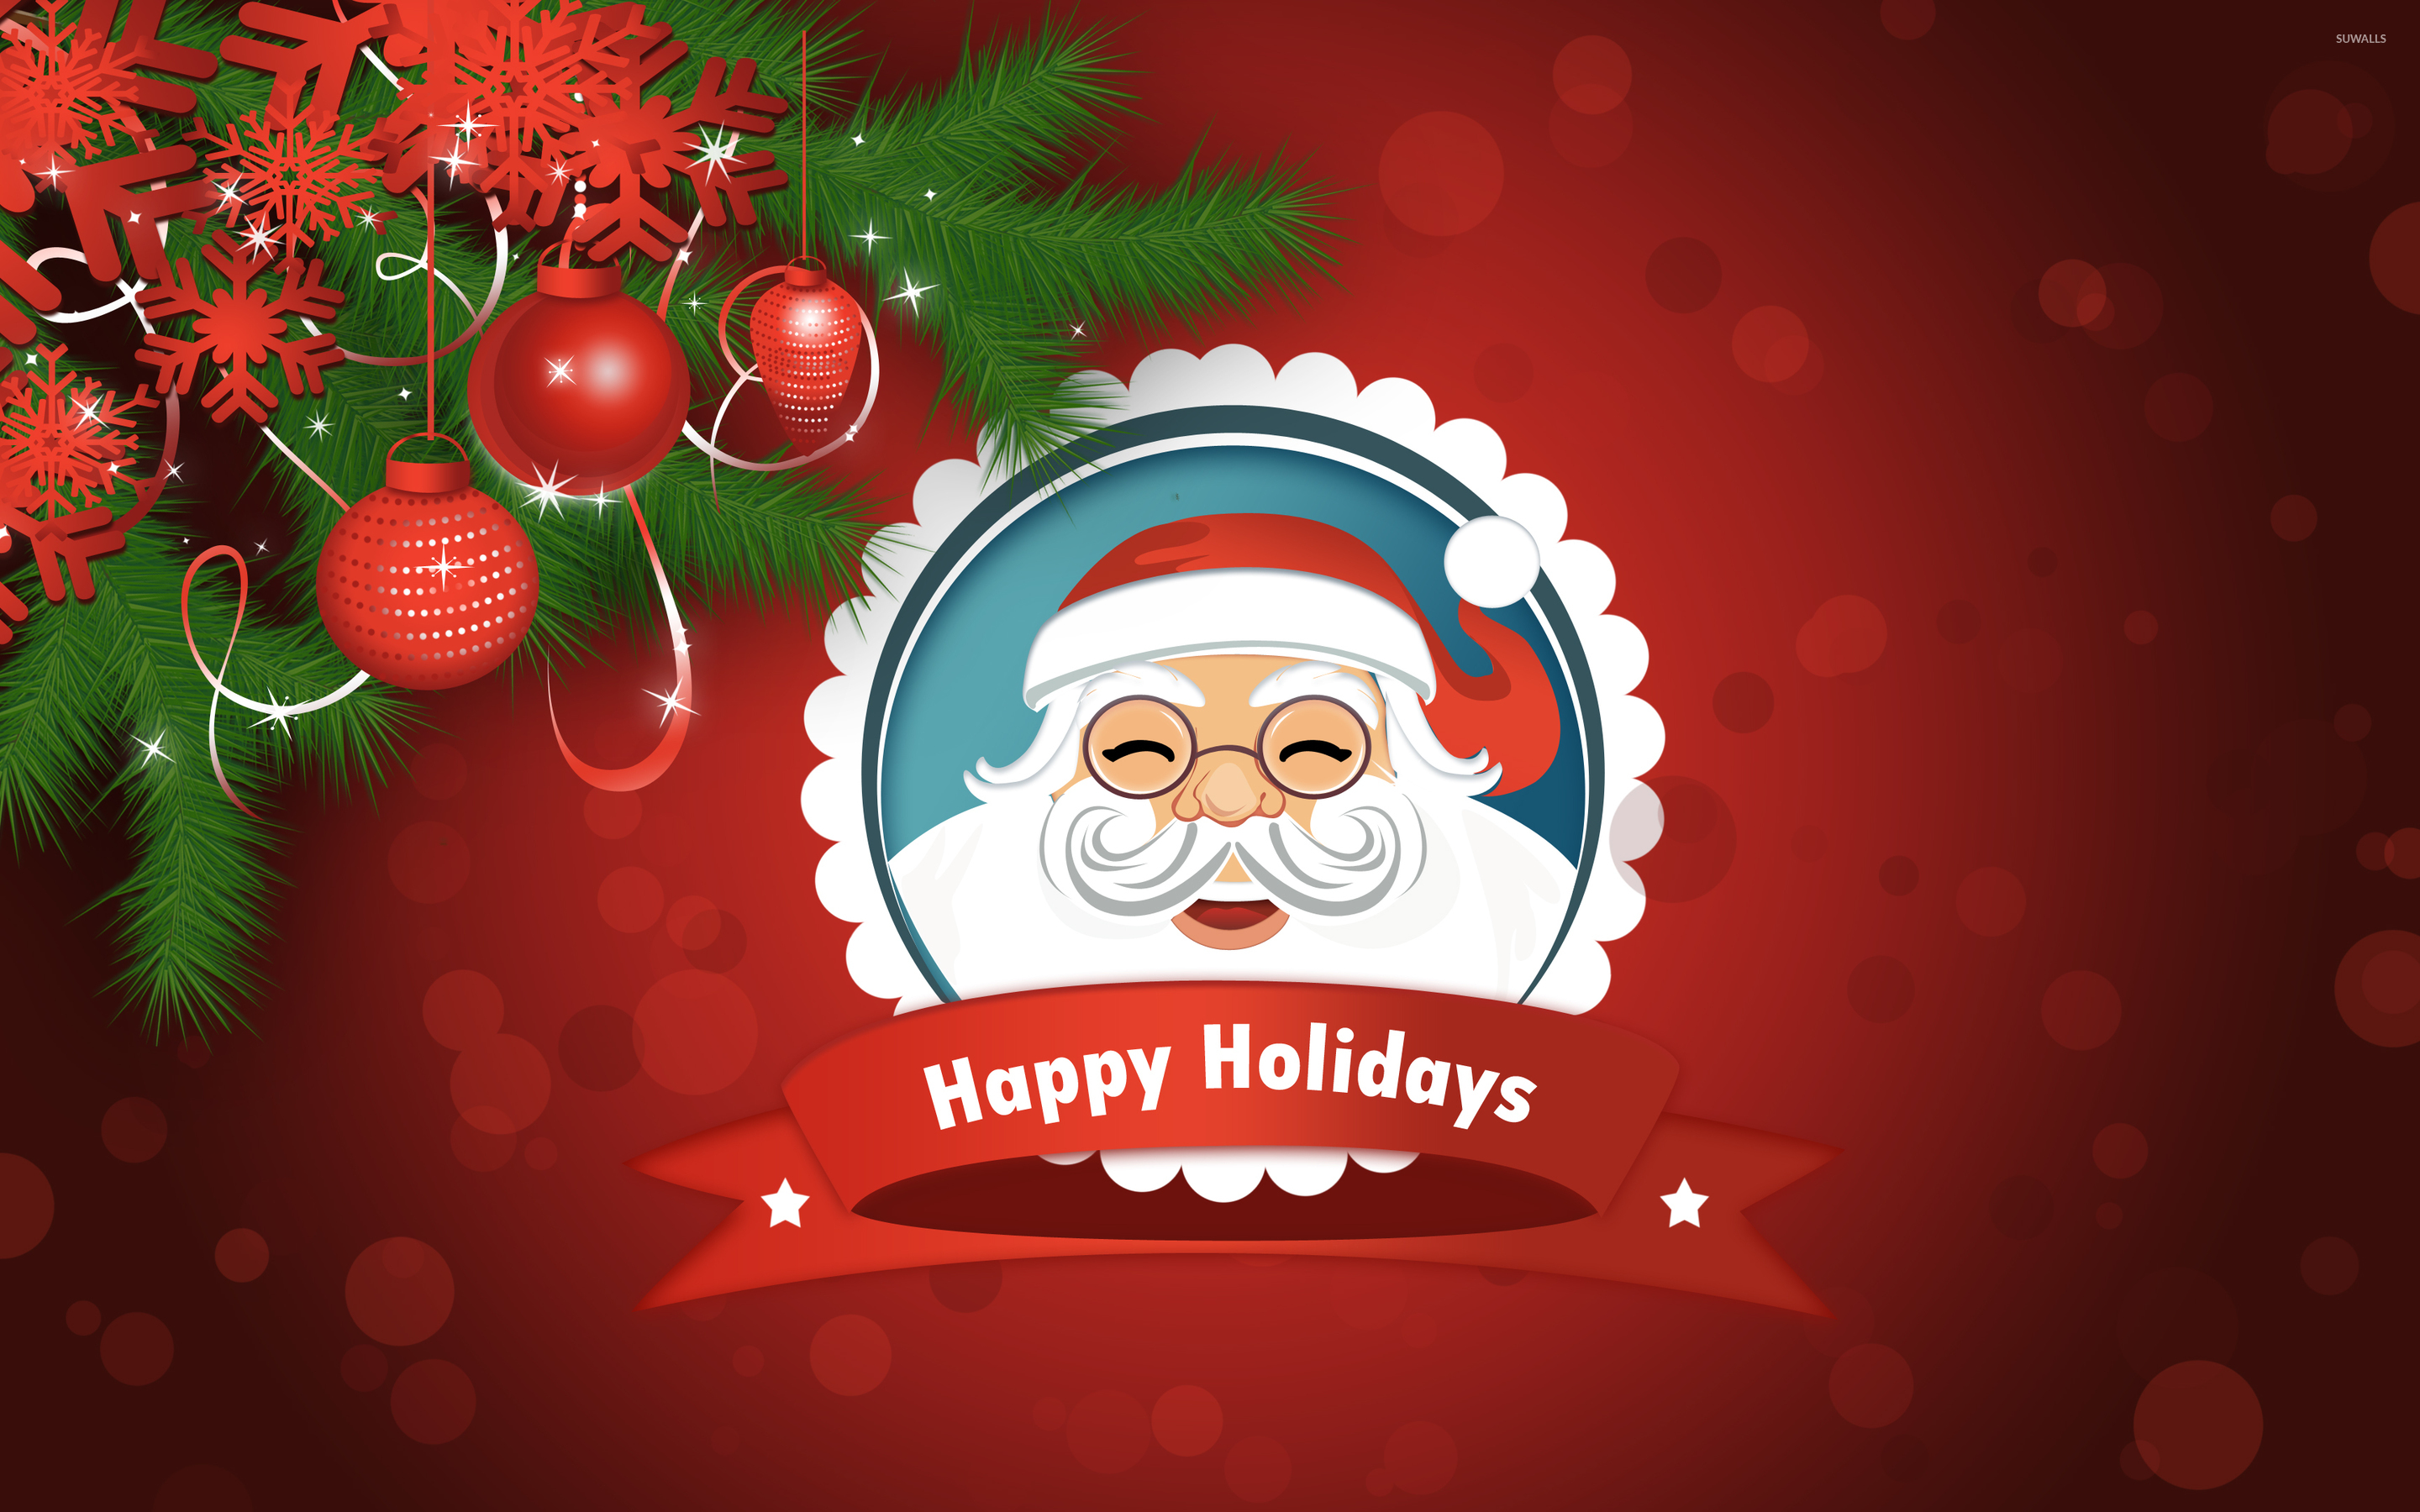 Smiling Santa Claus wallpaper - Holiday wallpapers - #50304